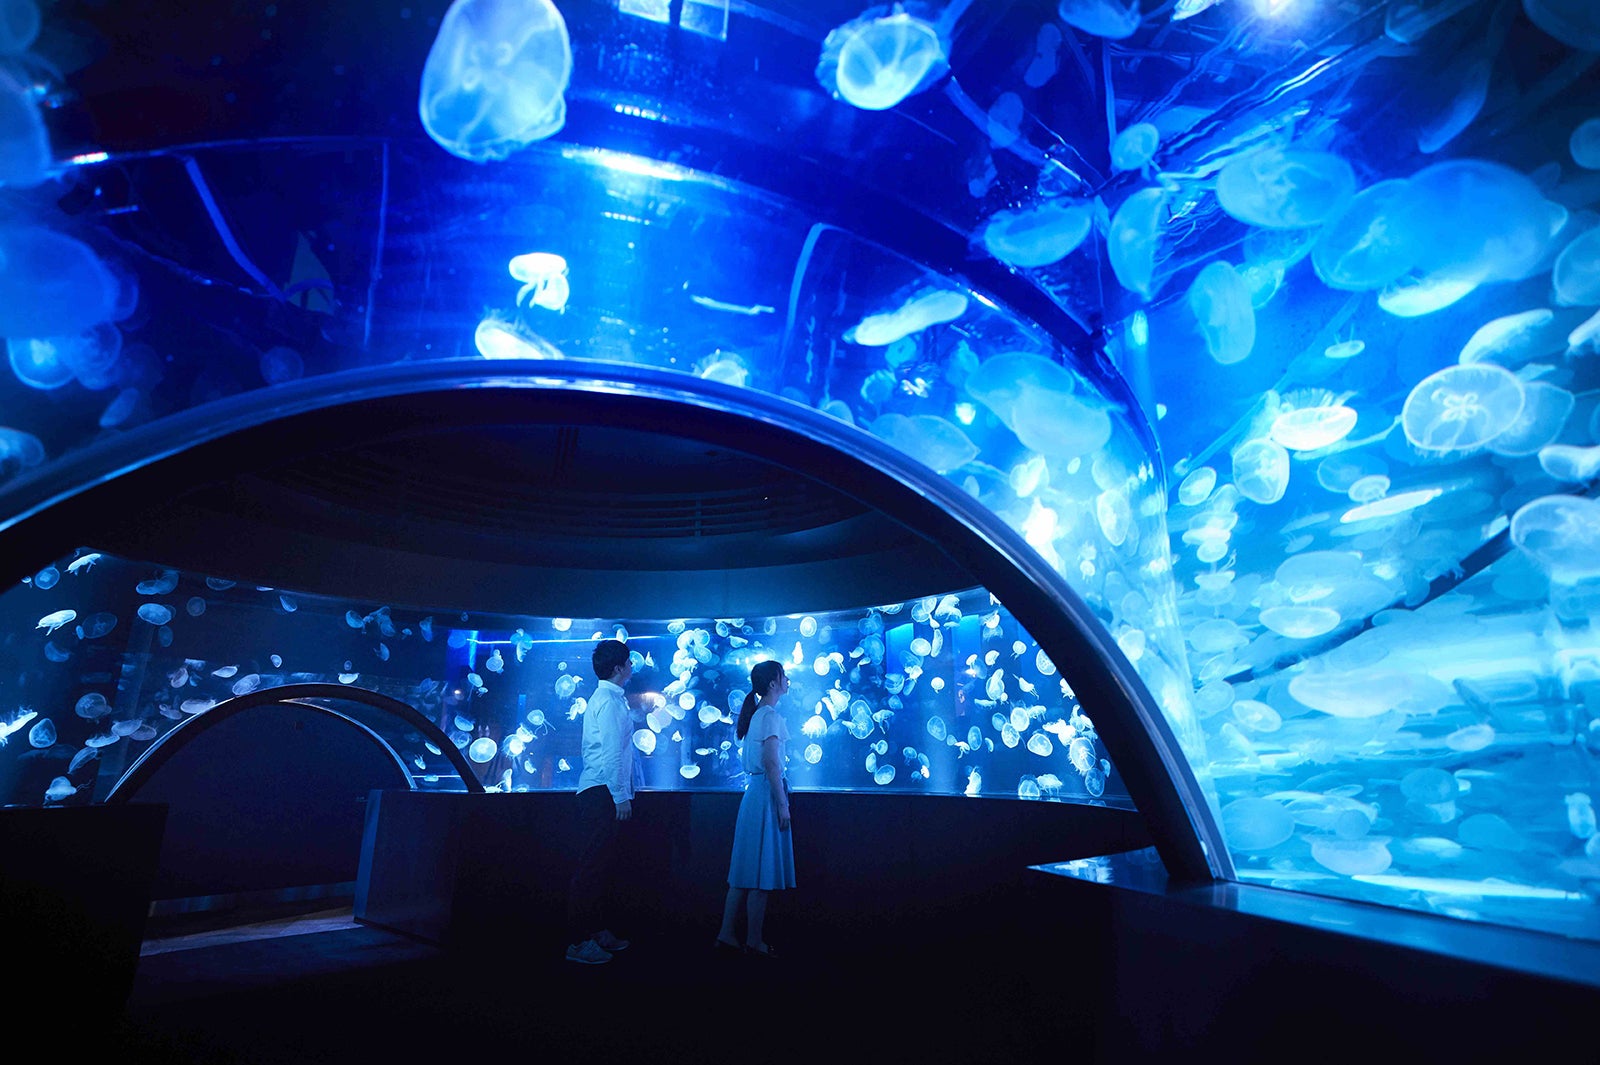 京都水族館に新展示 クラゲワンダー クラゲ5 000匹漂う海の世界 女子旅プレス